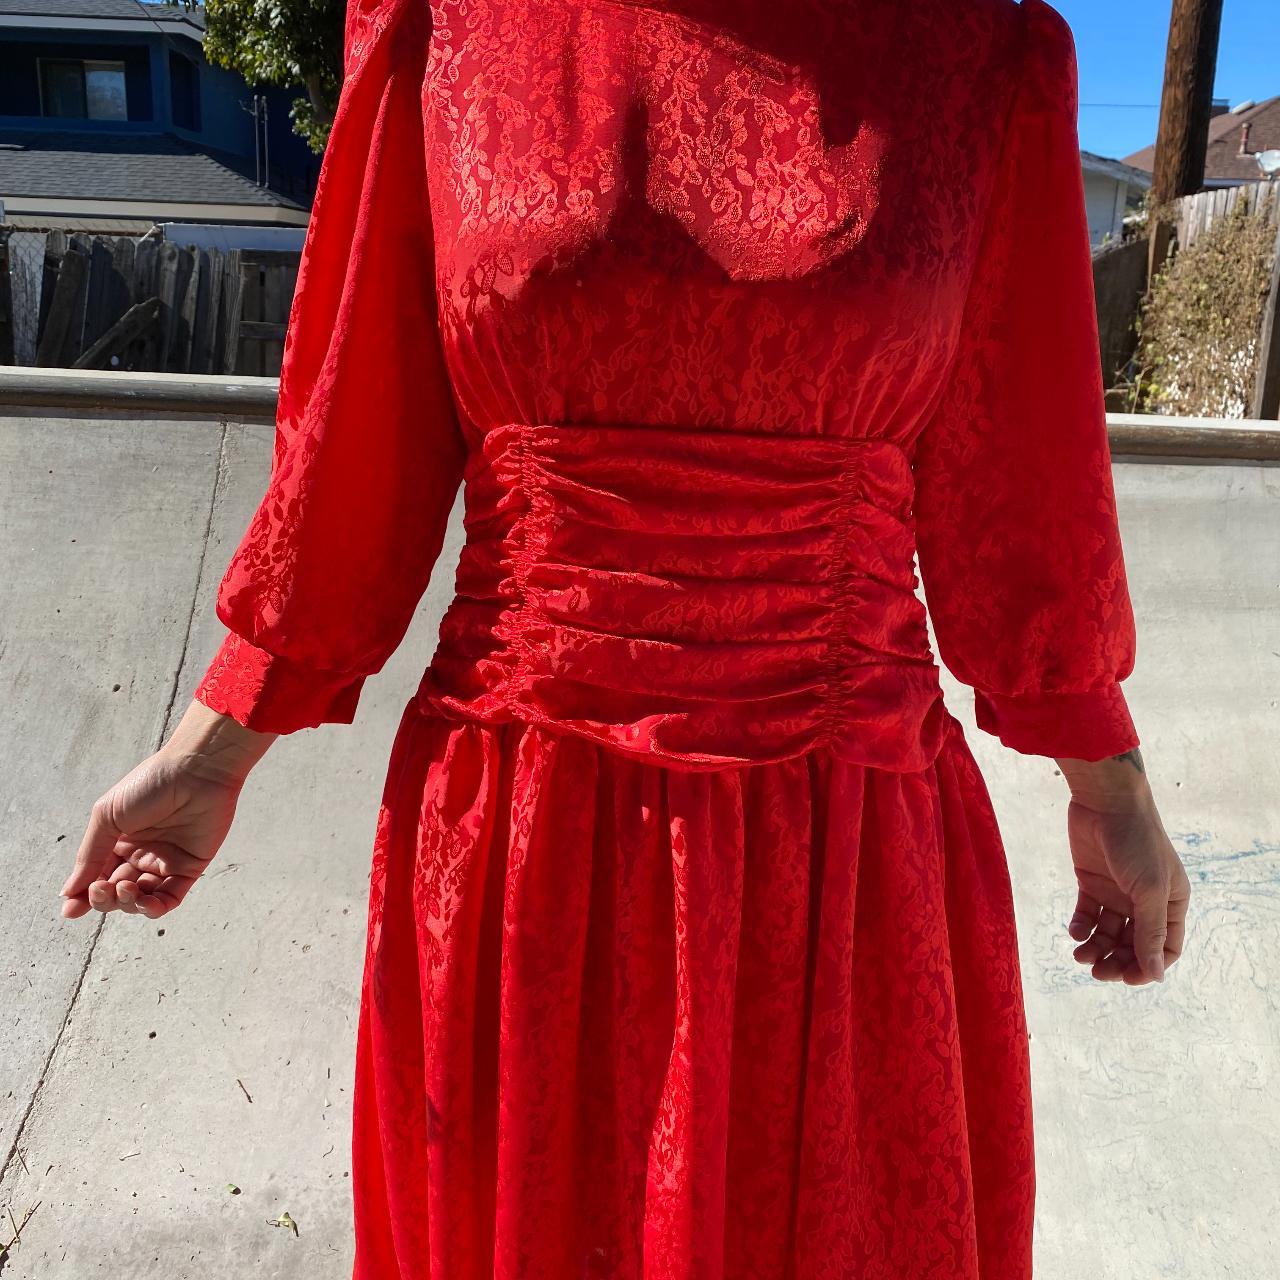 Impromptu Women's Red Dress